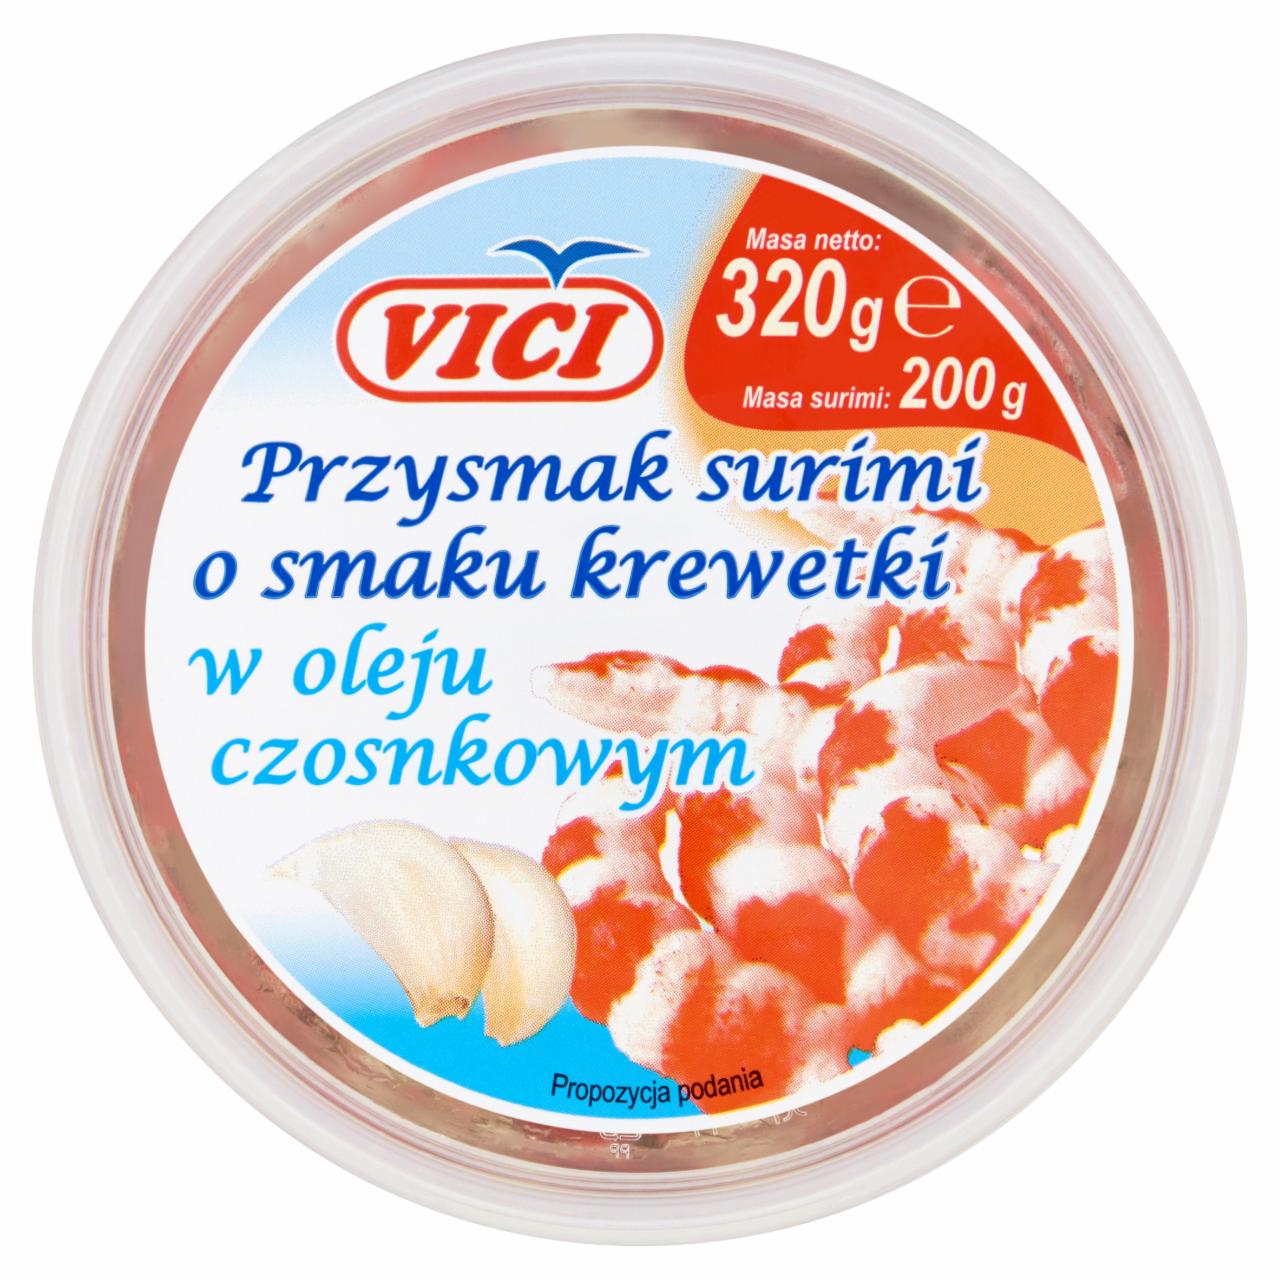 Zdjęcia - Vici Przysmak surimi o smaku krewetki w oleju czosnkowym 320 g